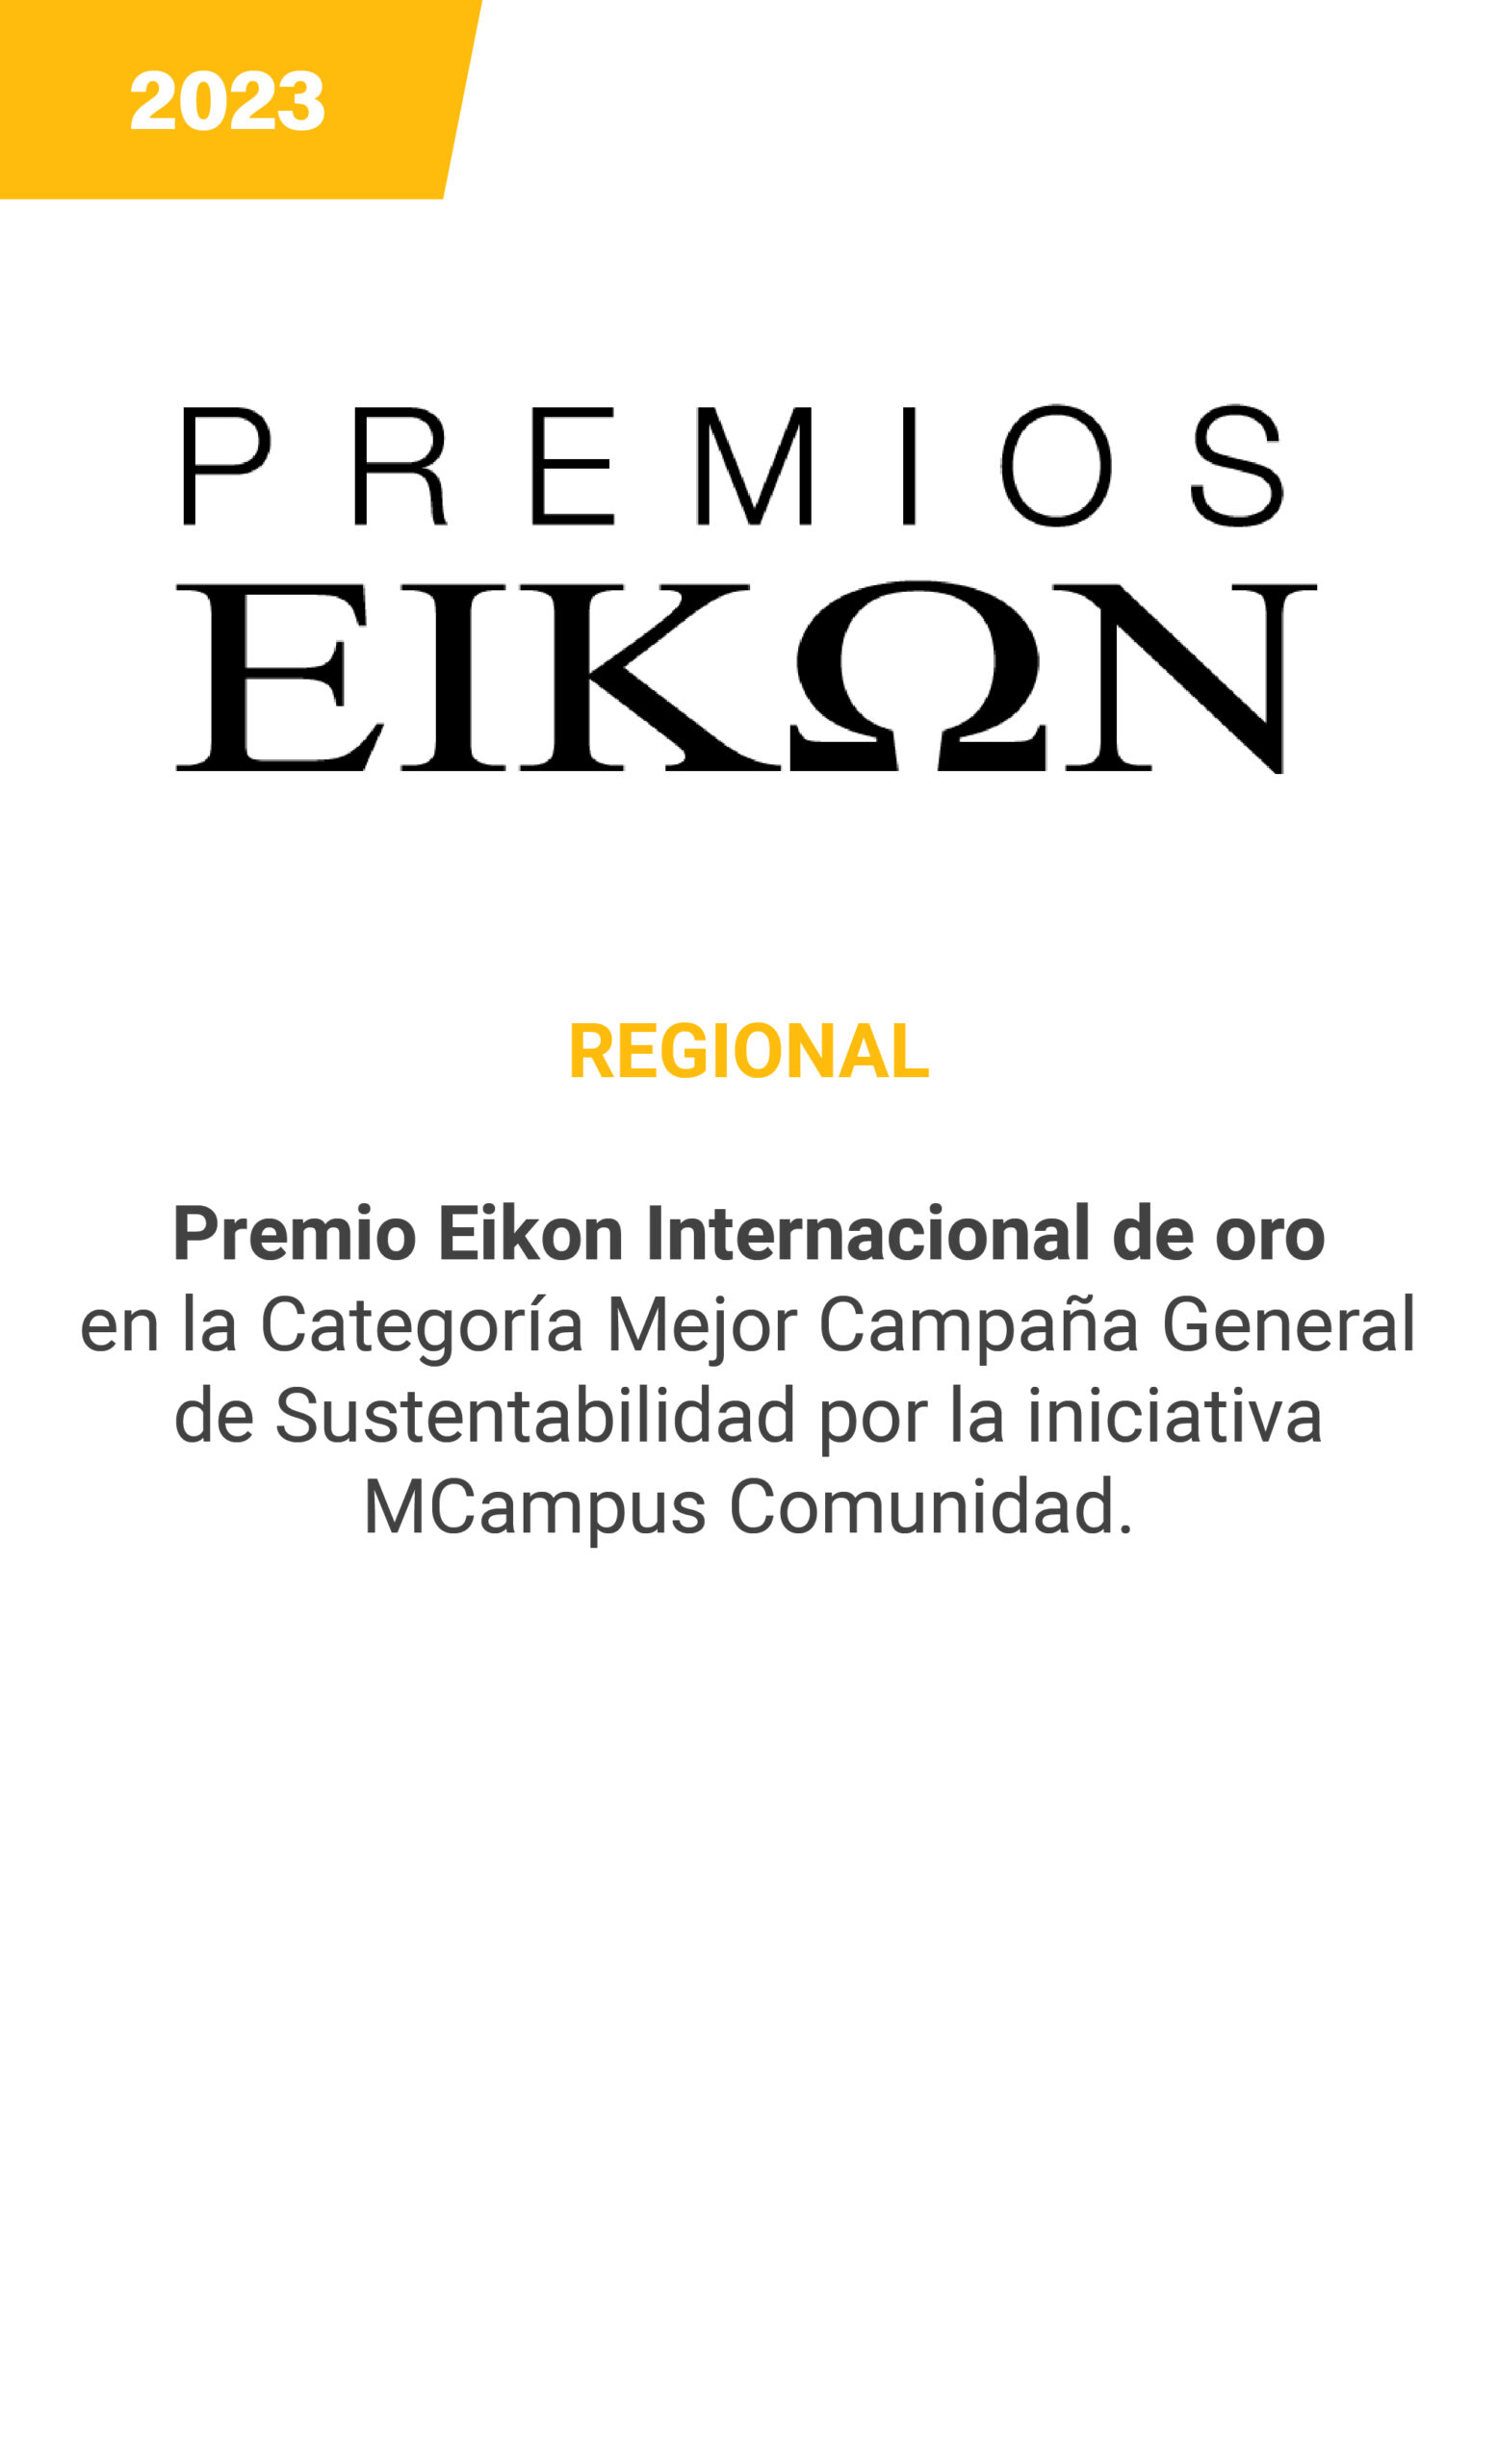 Eikon - Regional - 2023 mobile